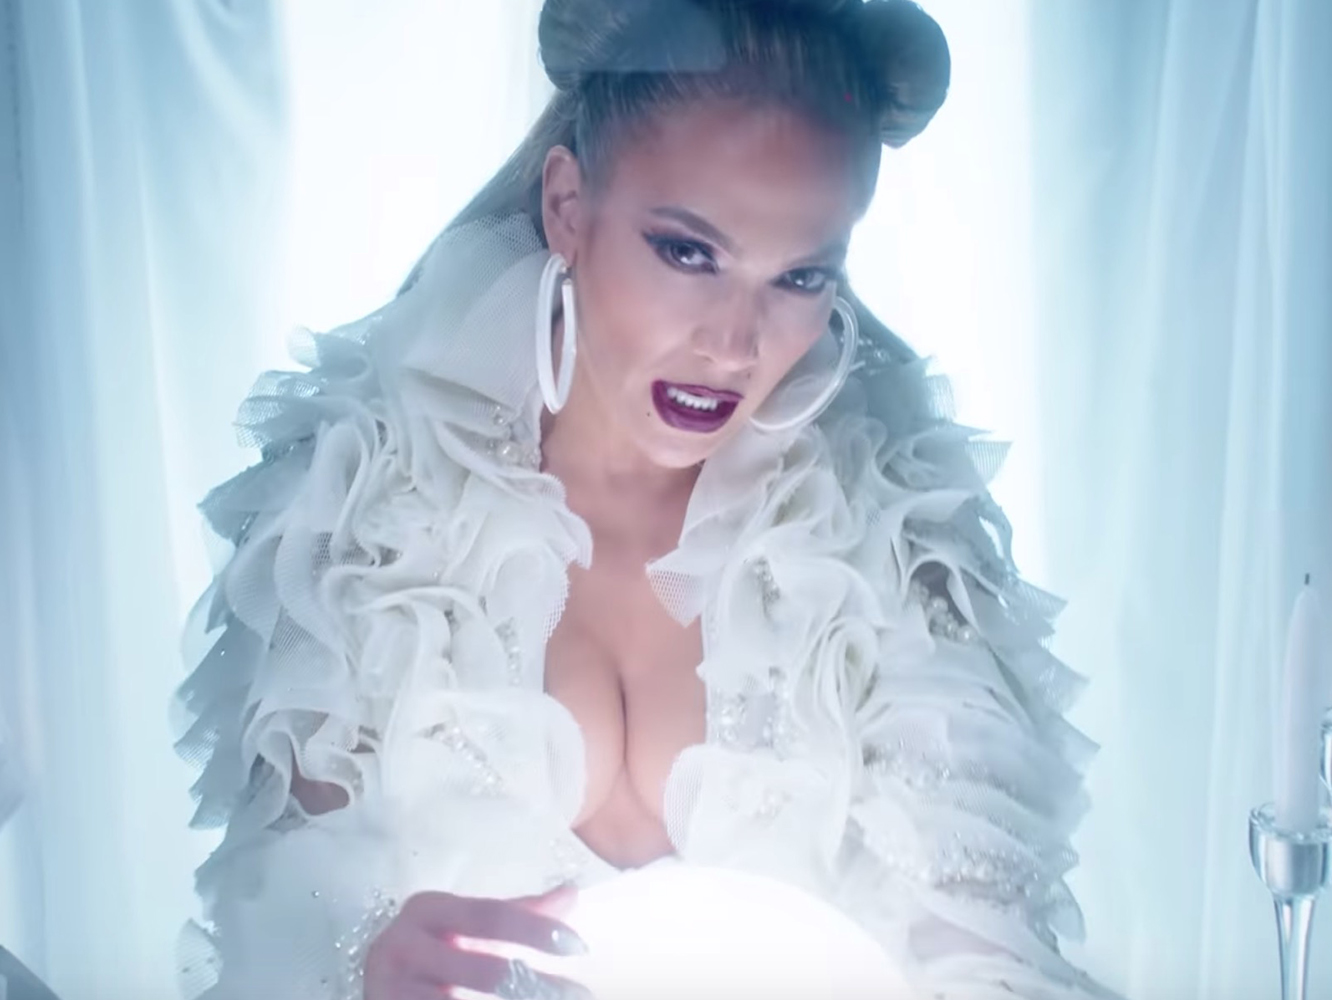  El mundo entero es la mujer barbuda en el vídeo de ‘Medicine’ de Jennifer Lopez